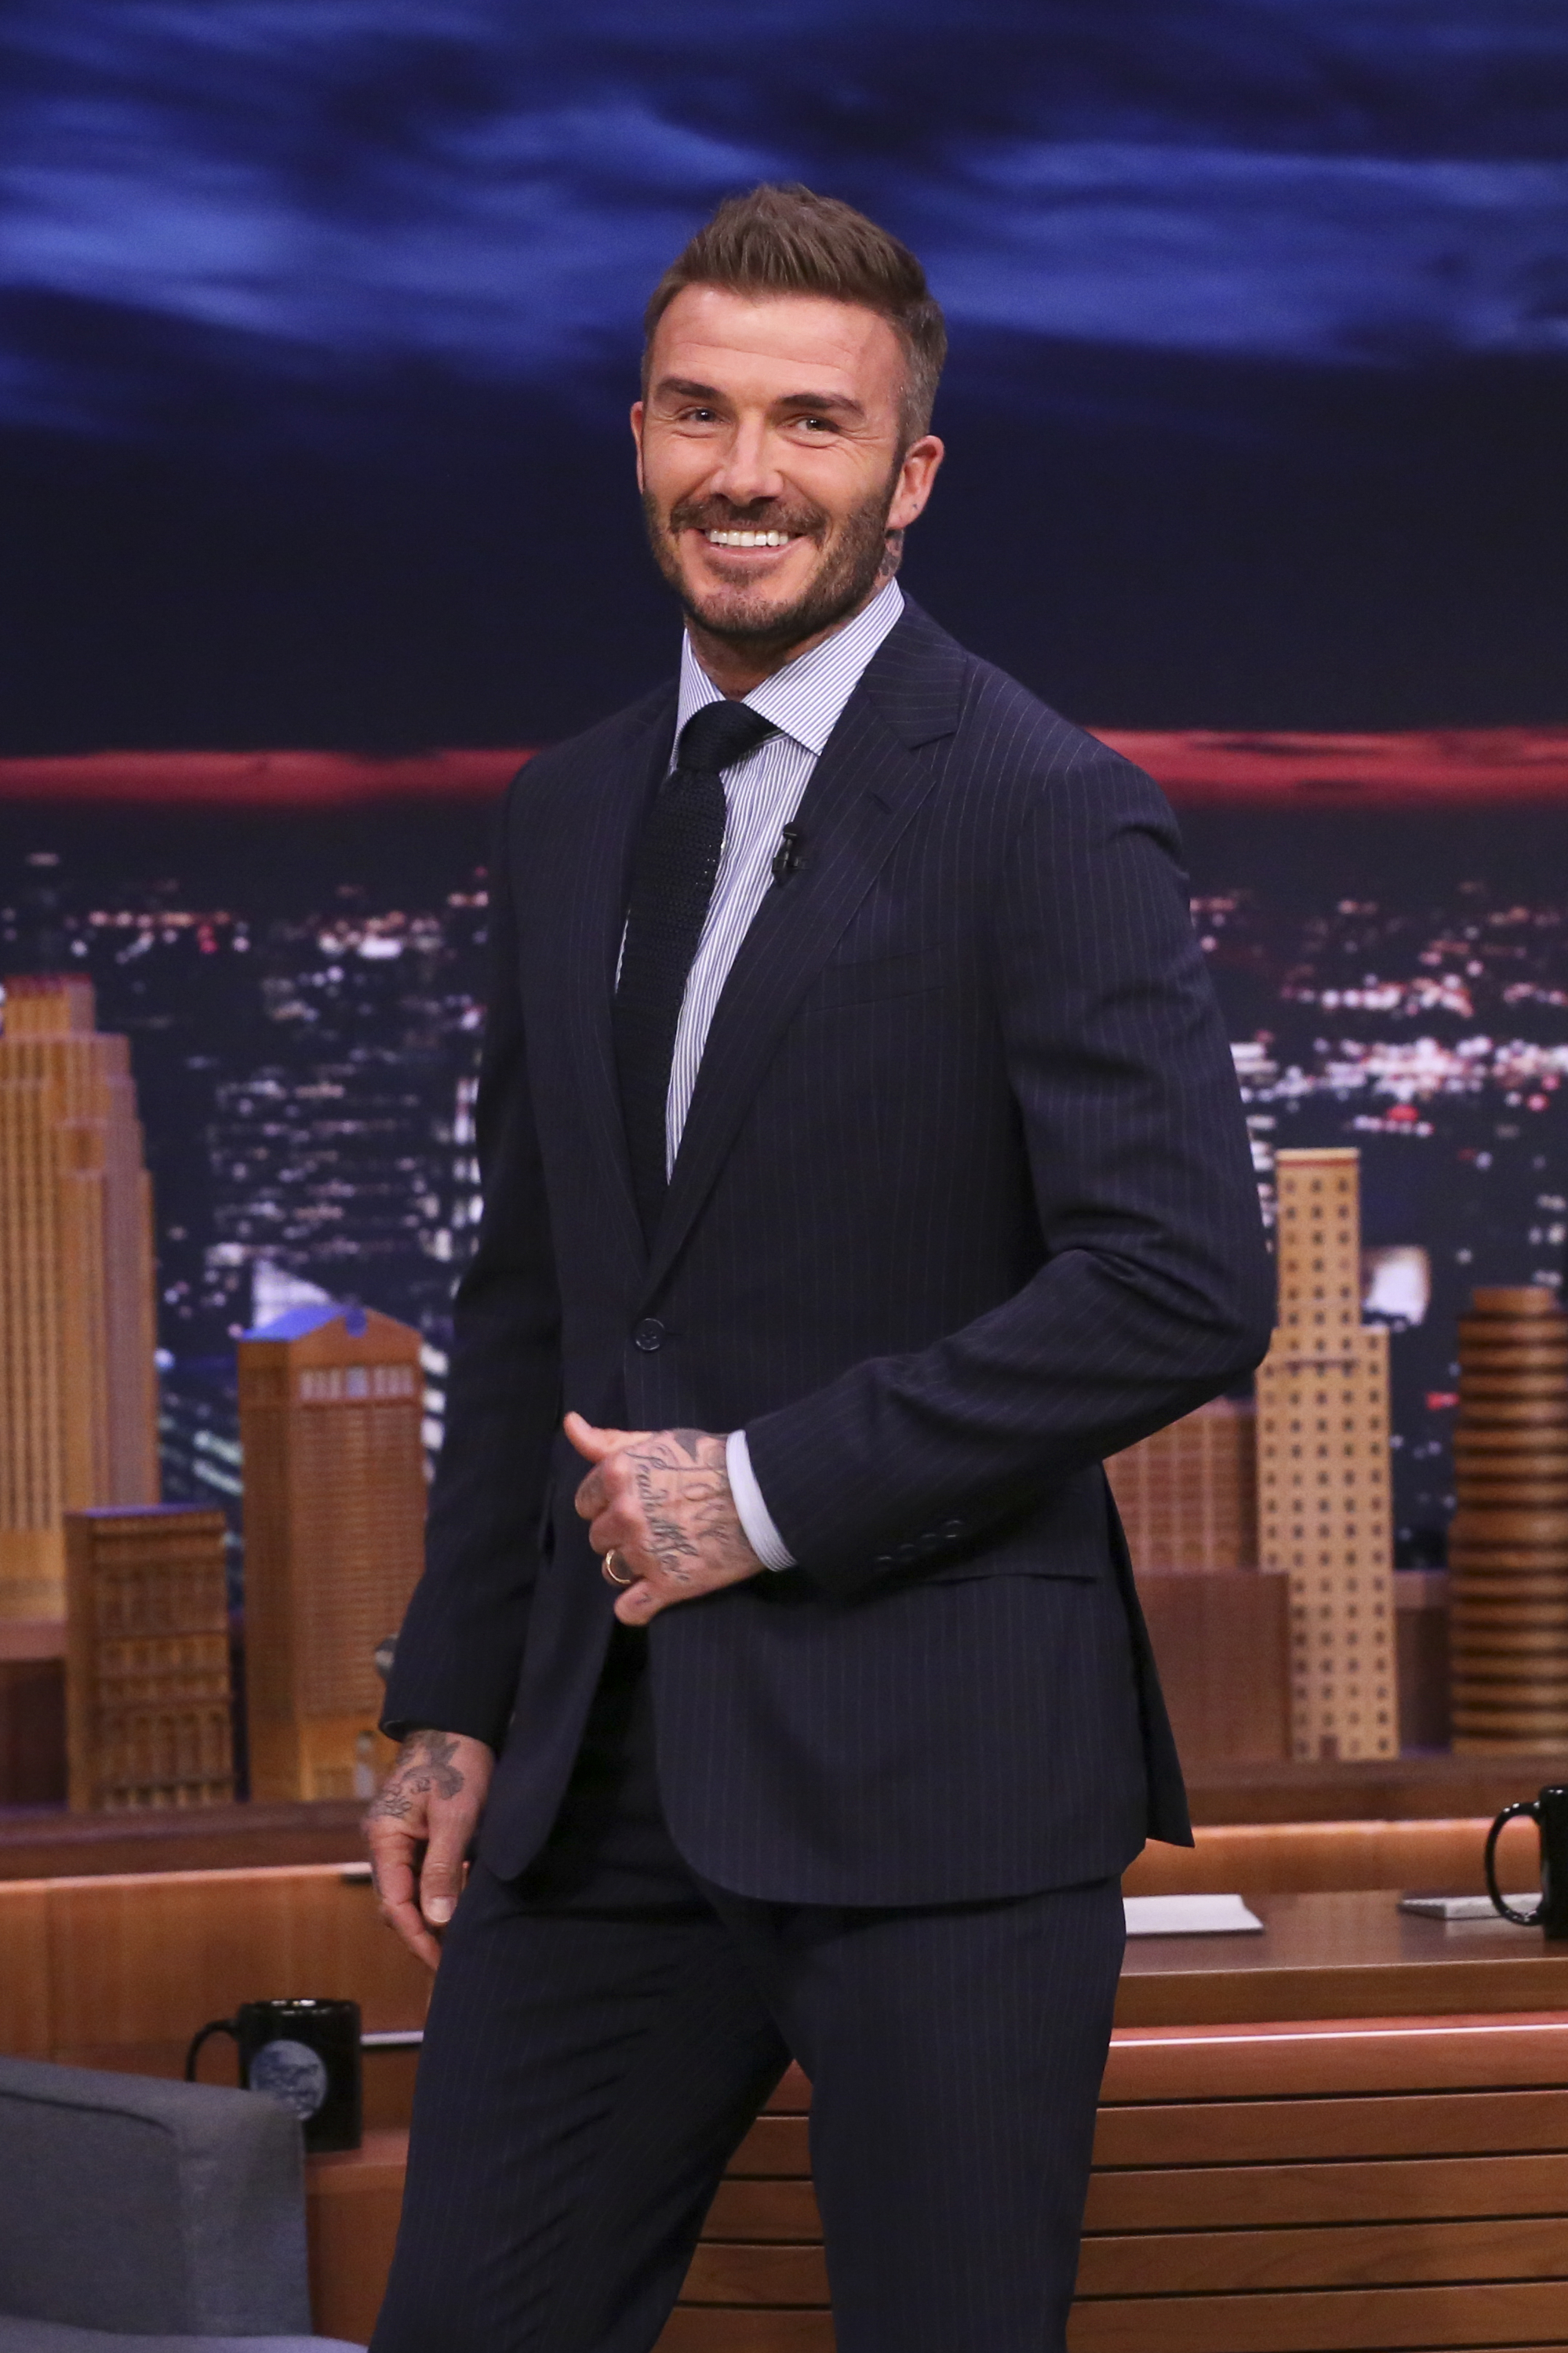 David Beckham en "The Tonight Show with Jimmy Fallon" el 26 de febrero de 2020 | Foto: Getty Images